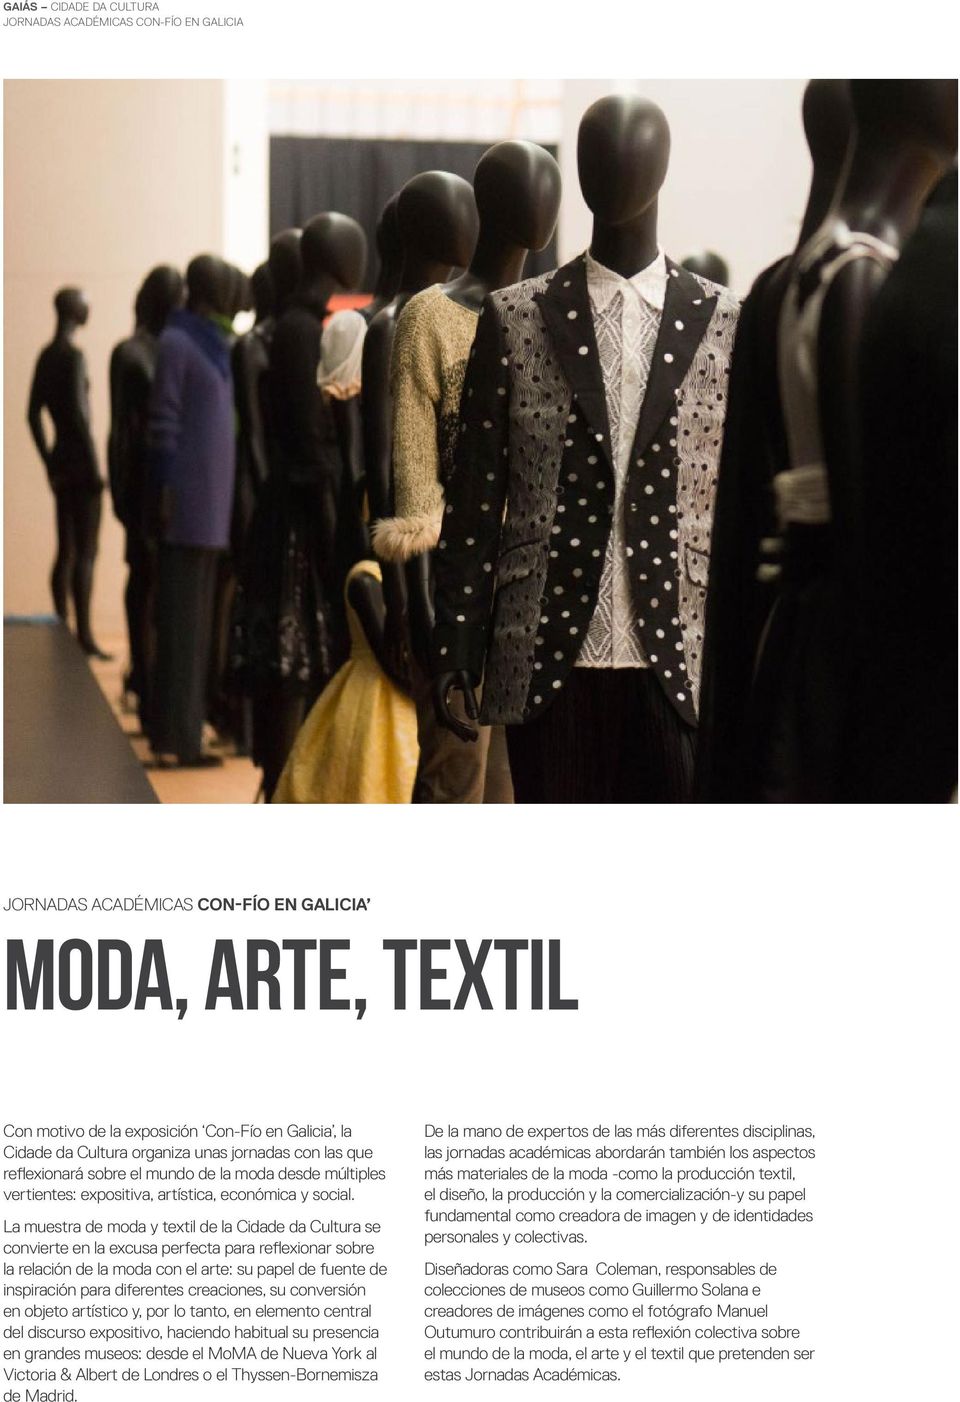 La muestra de moda y textil de la Cidade da Cultura se convierte en la excusa perfecta para reflexionar sobre la relación de la moda con el arte: su papel de fuente de inspiración para diferentes